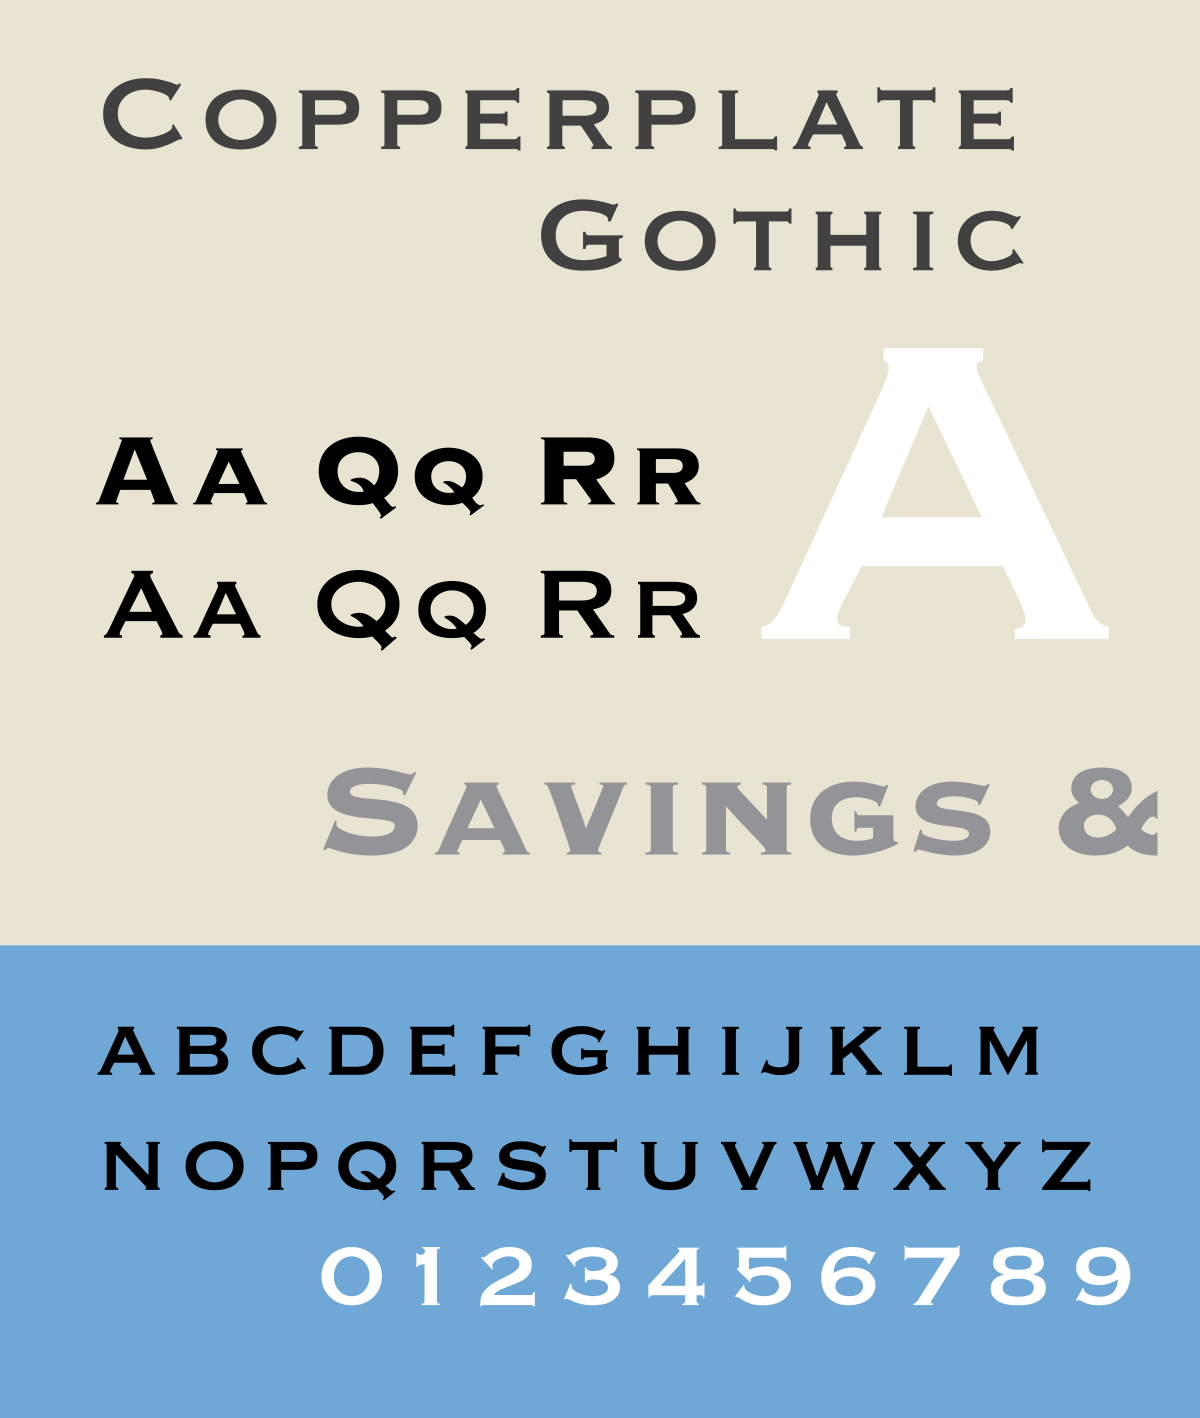 Beispiel einer Copperplate Gothic-Schriftart